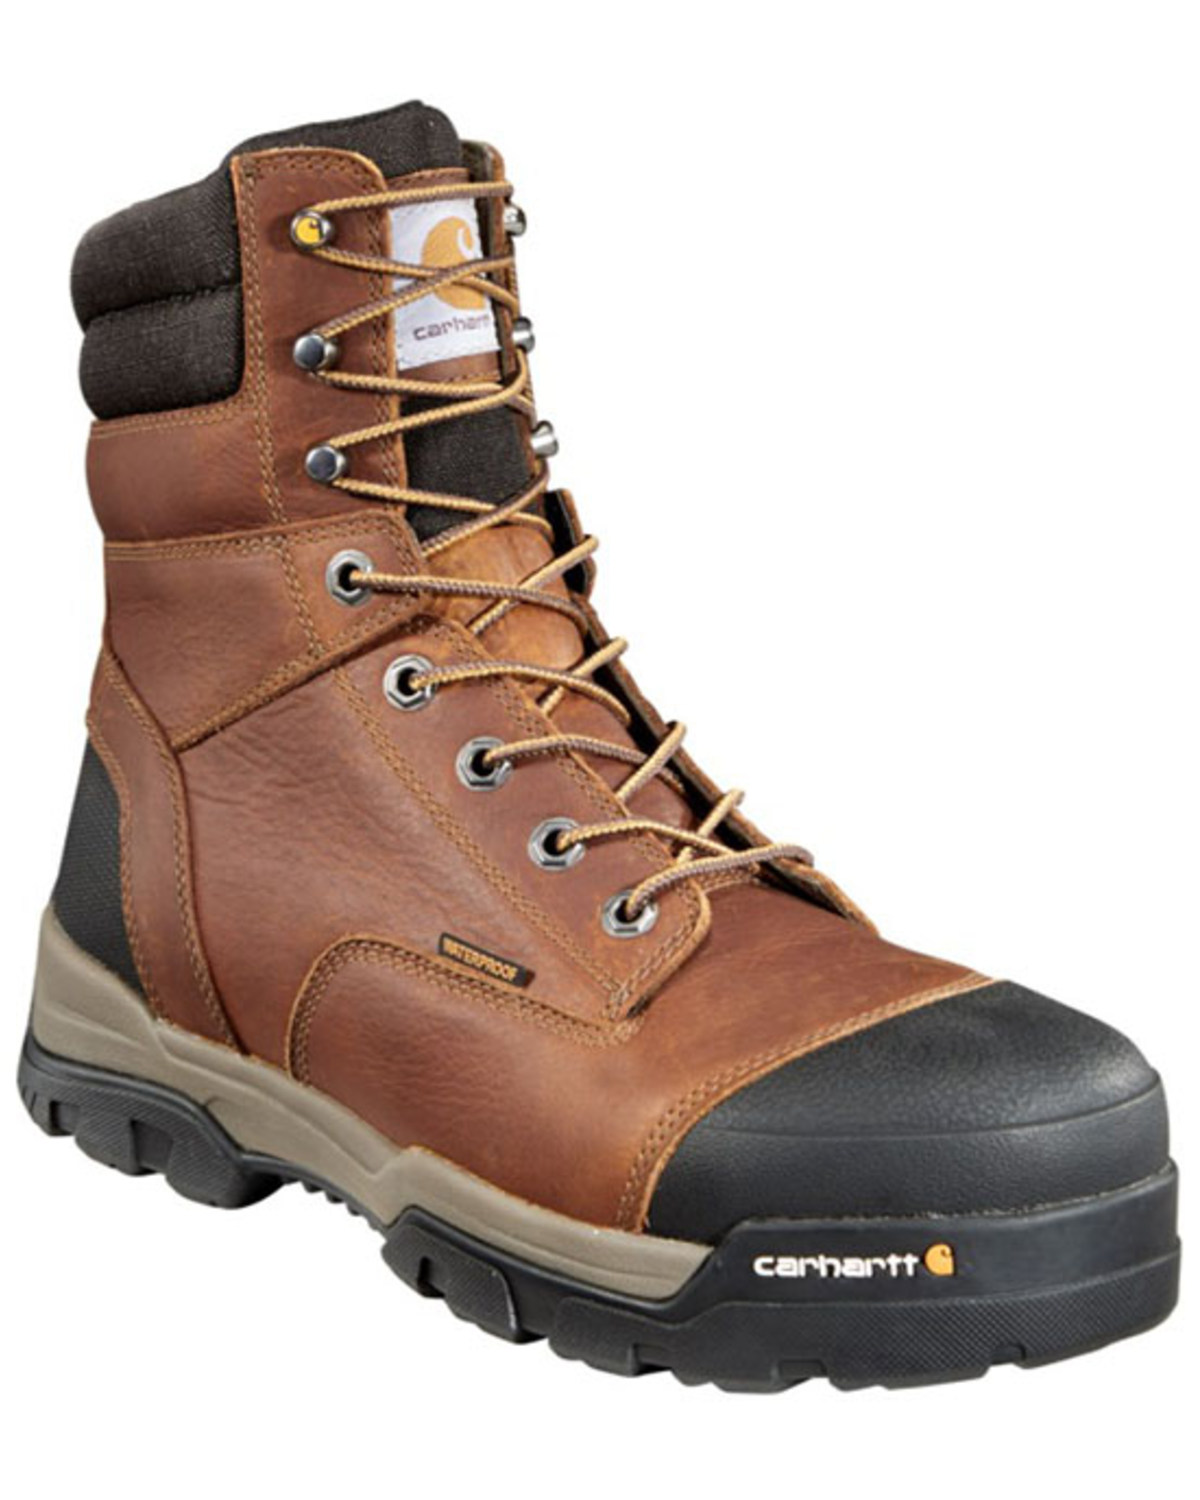 Carhartt Men's 8" Ground Force Waterproof Work Boots - Composite Toe